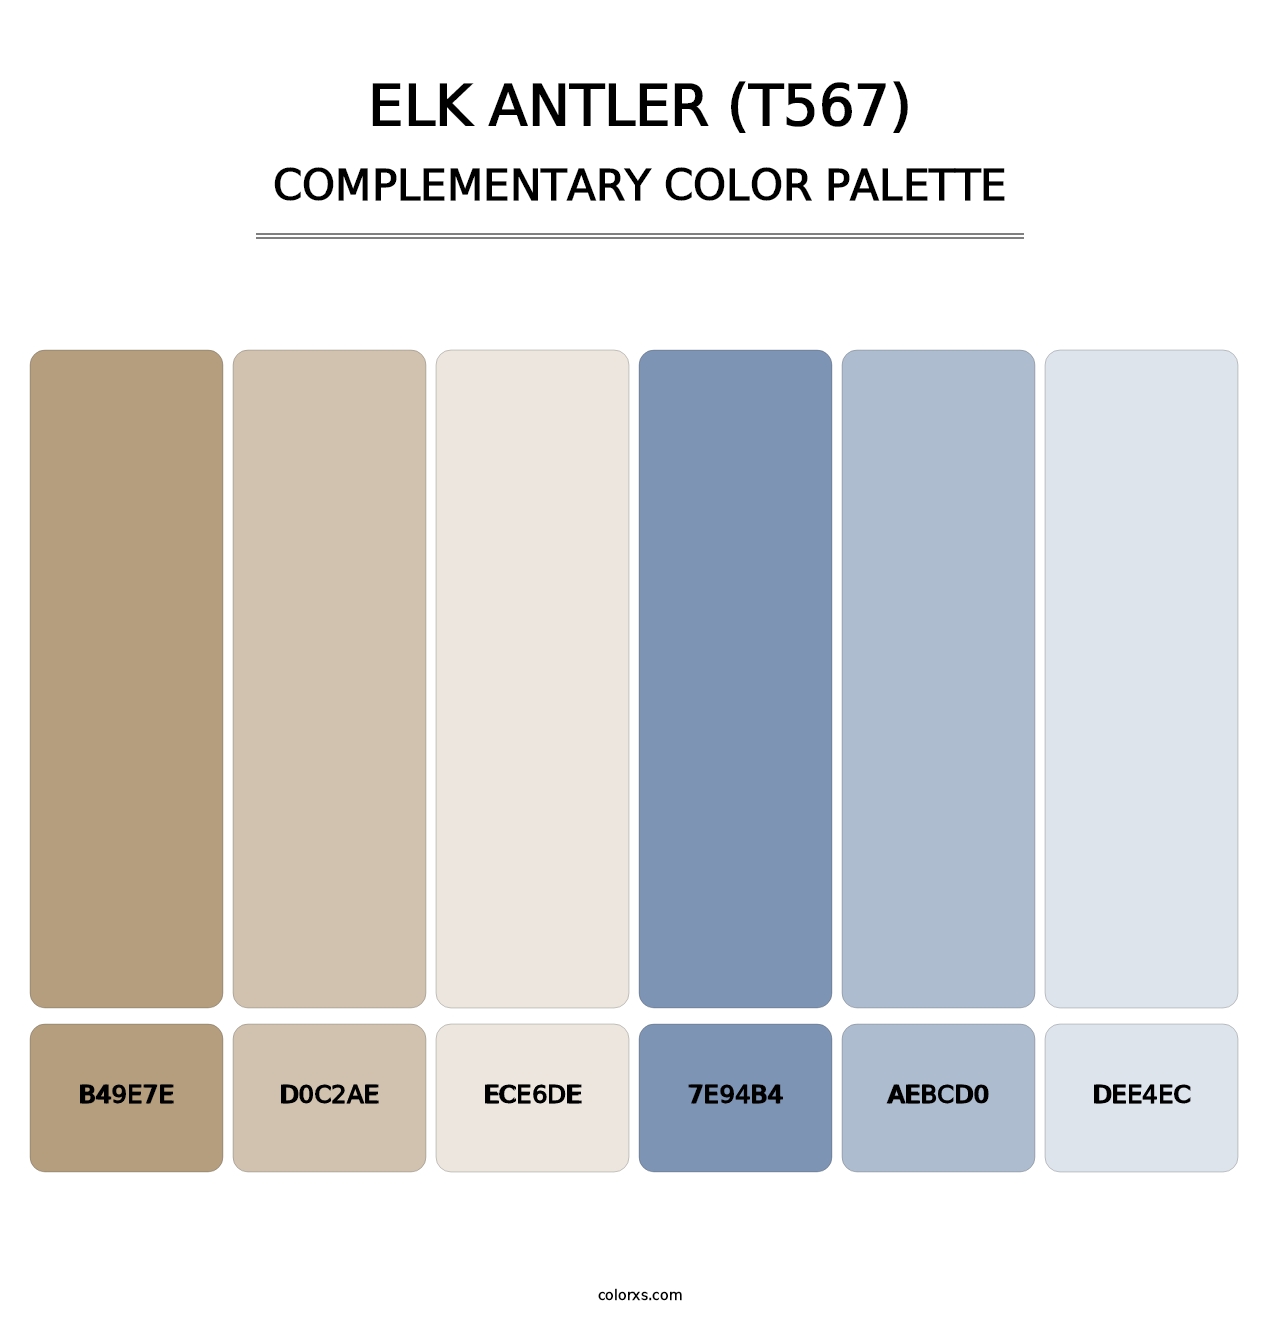 Elk Antler (T567) - Complementary Color Palette